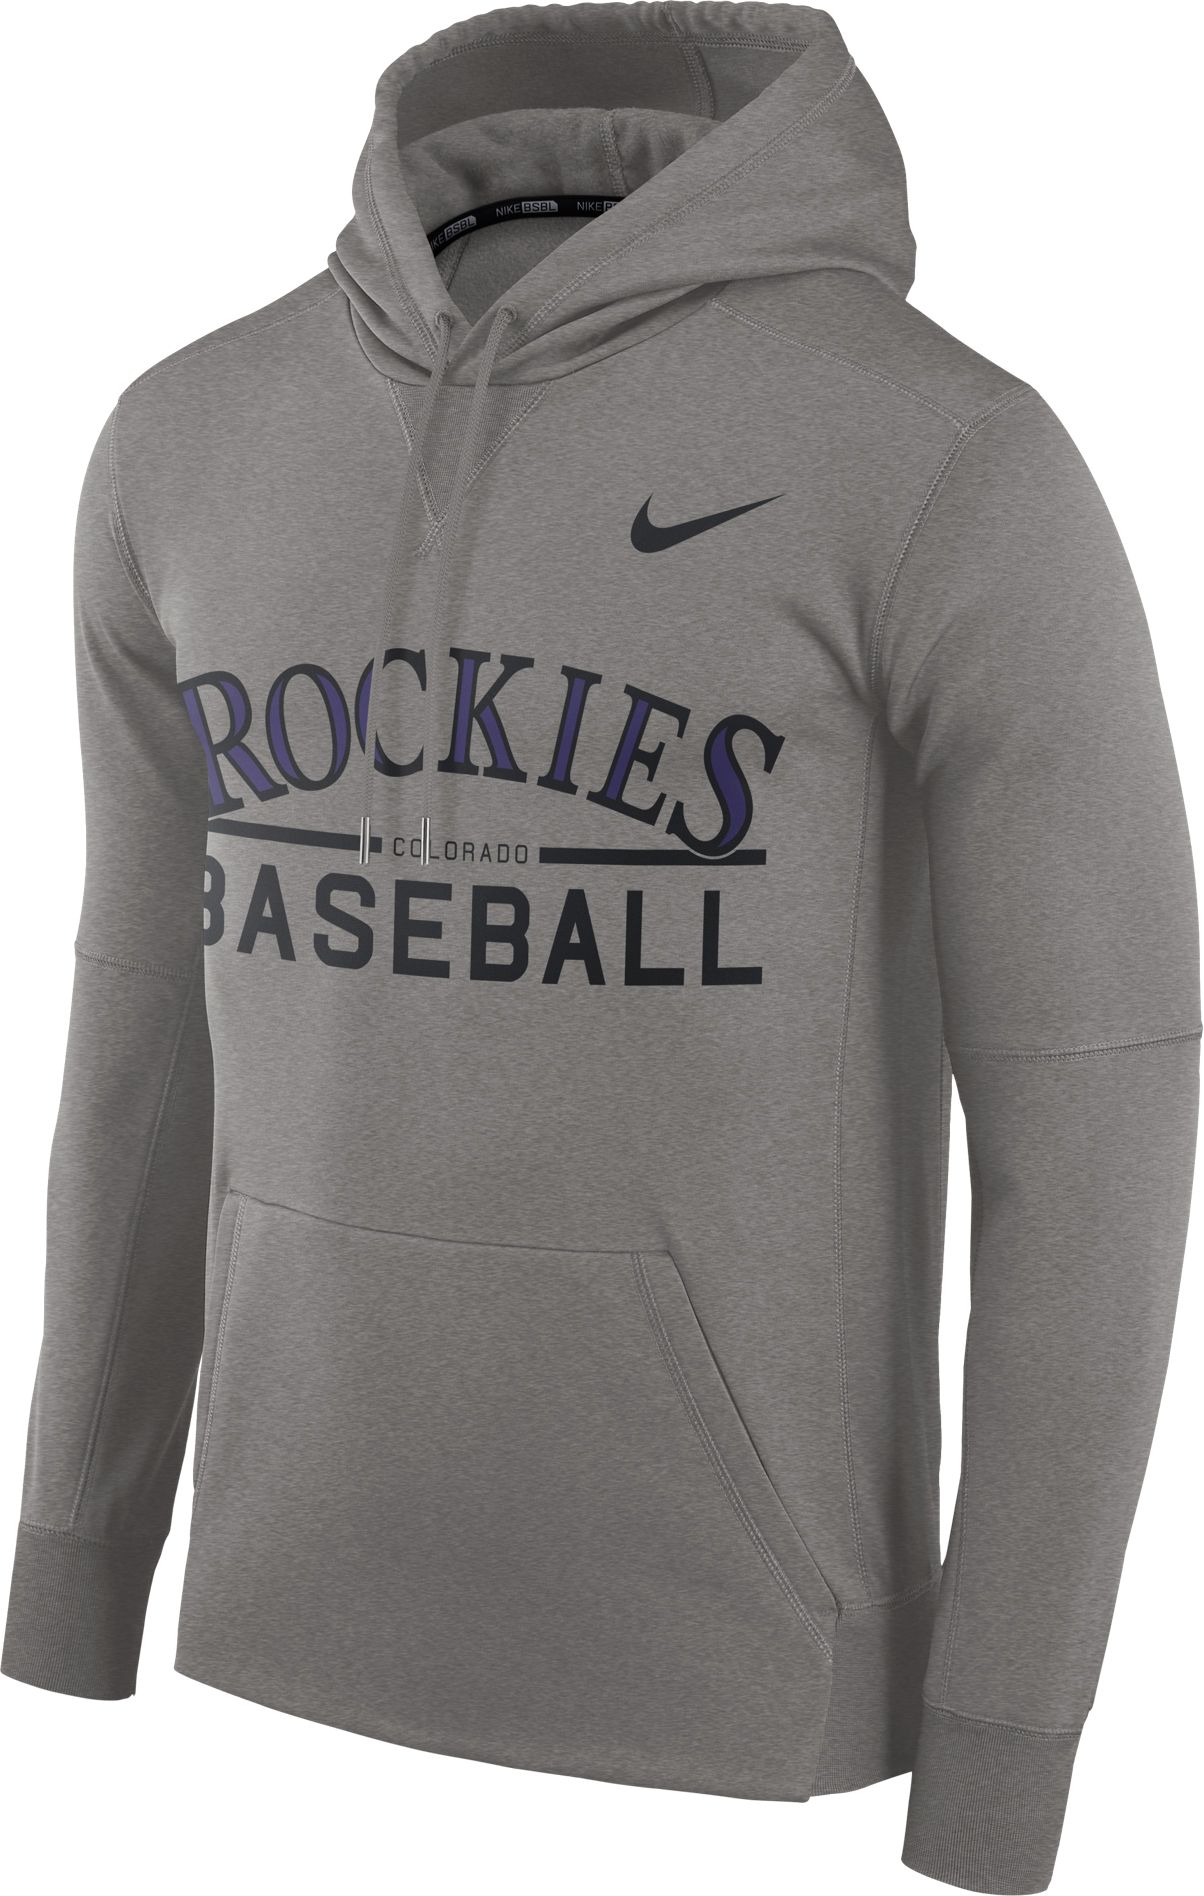 colorado rockies hoodies sale